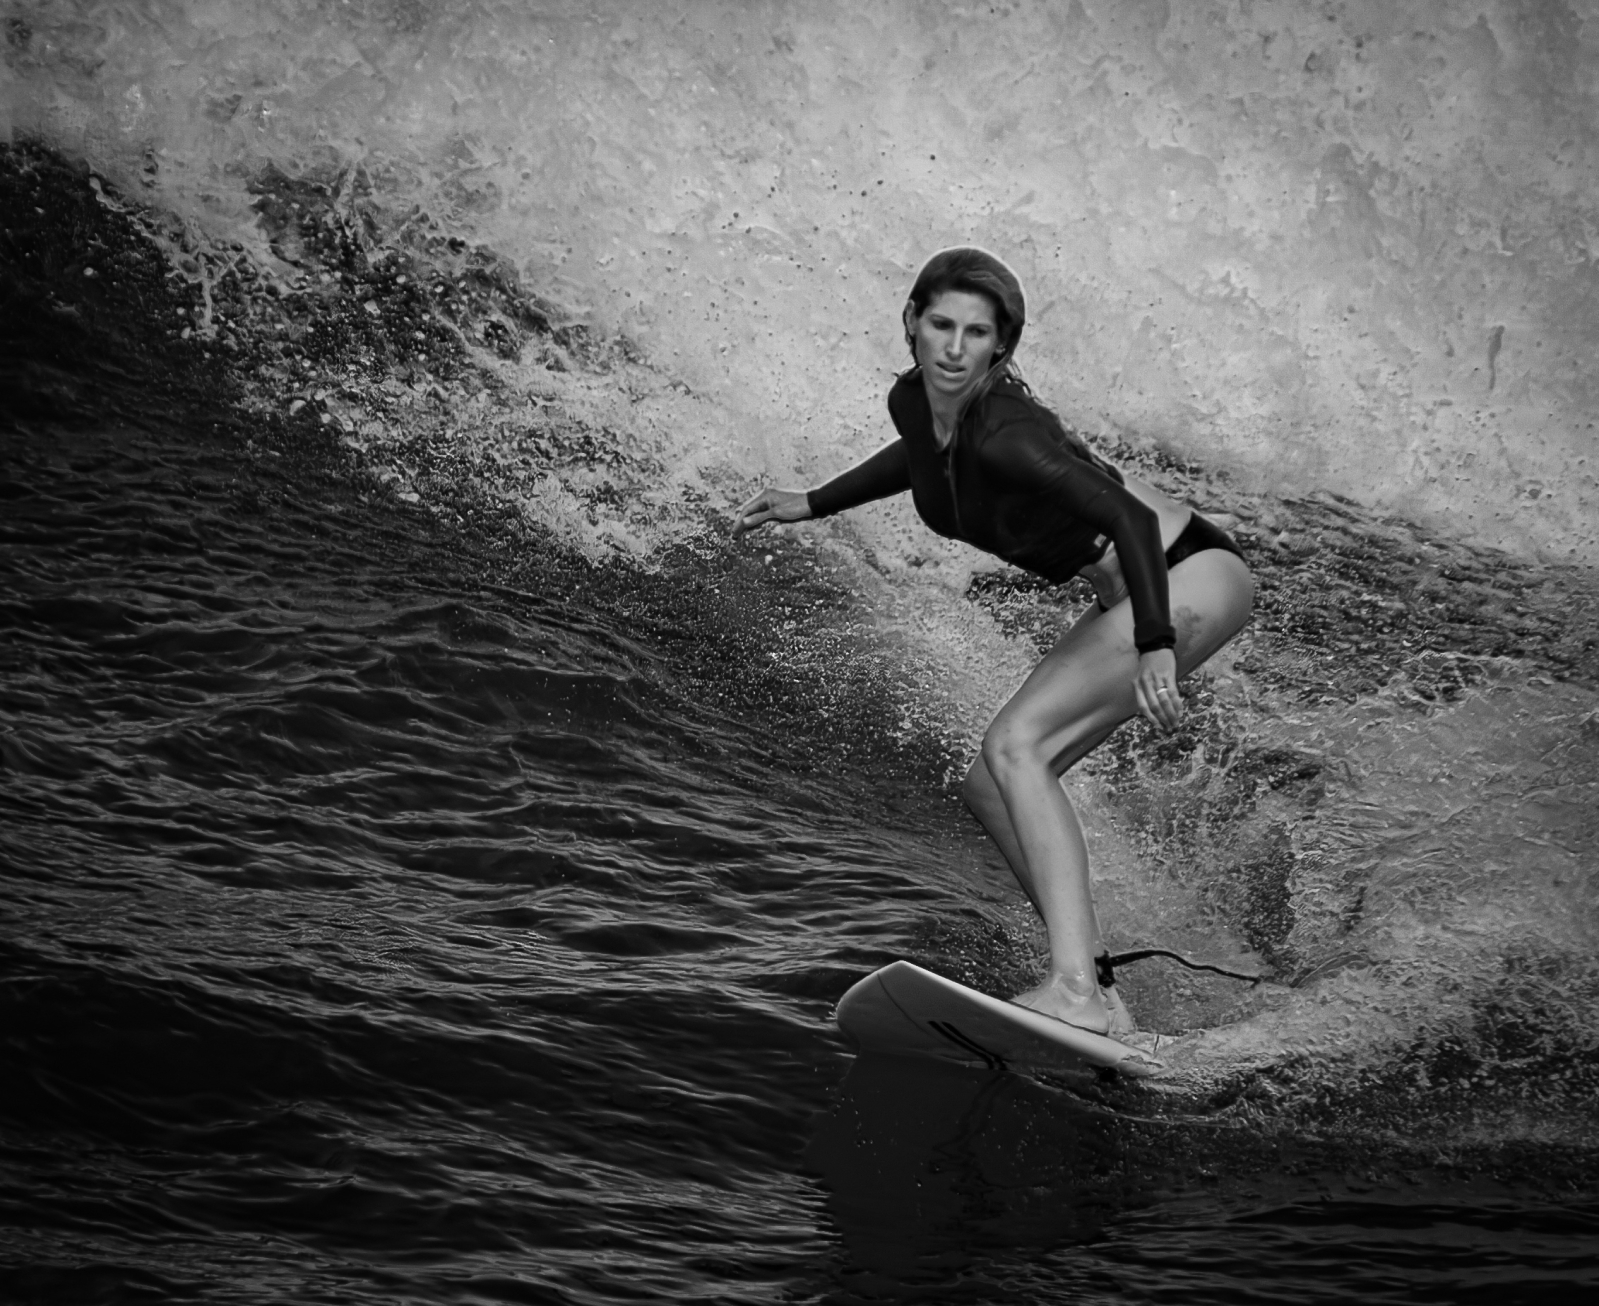 Woman Surfer - B&W - small.jpg